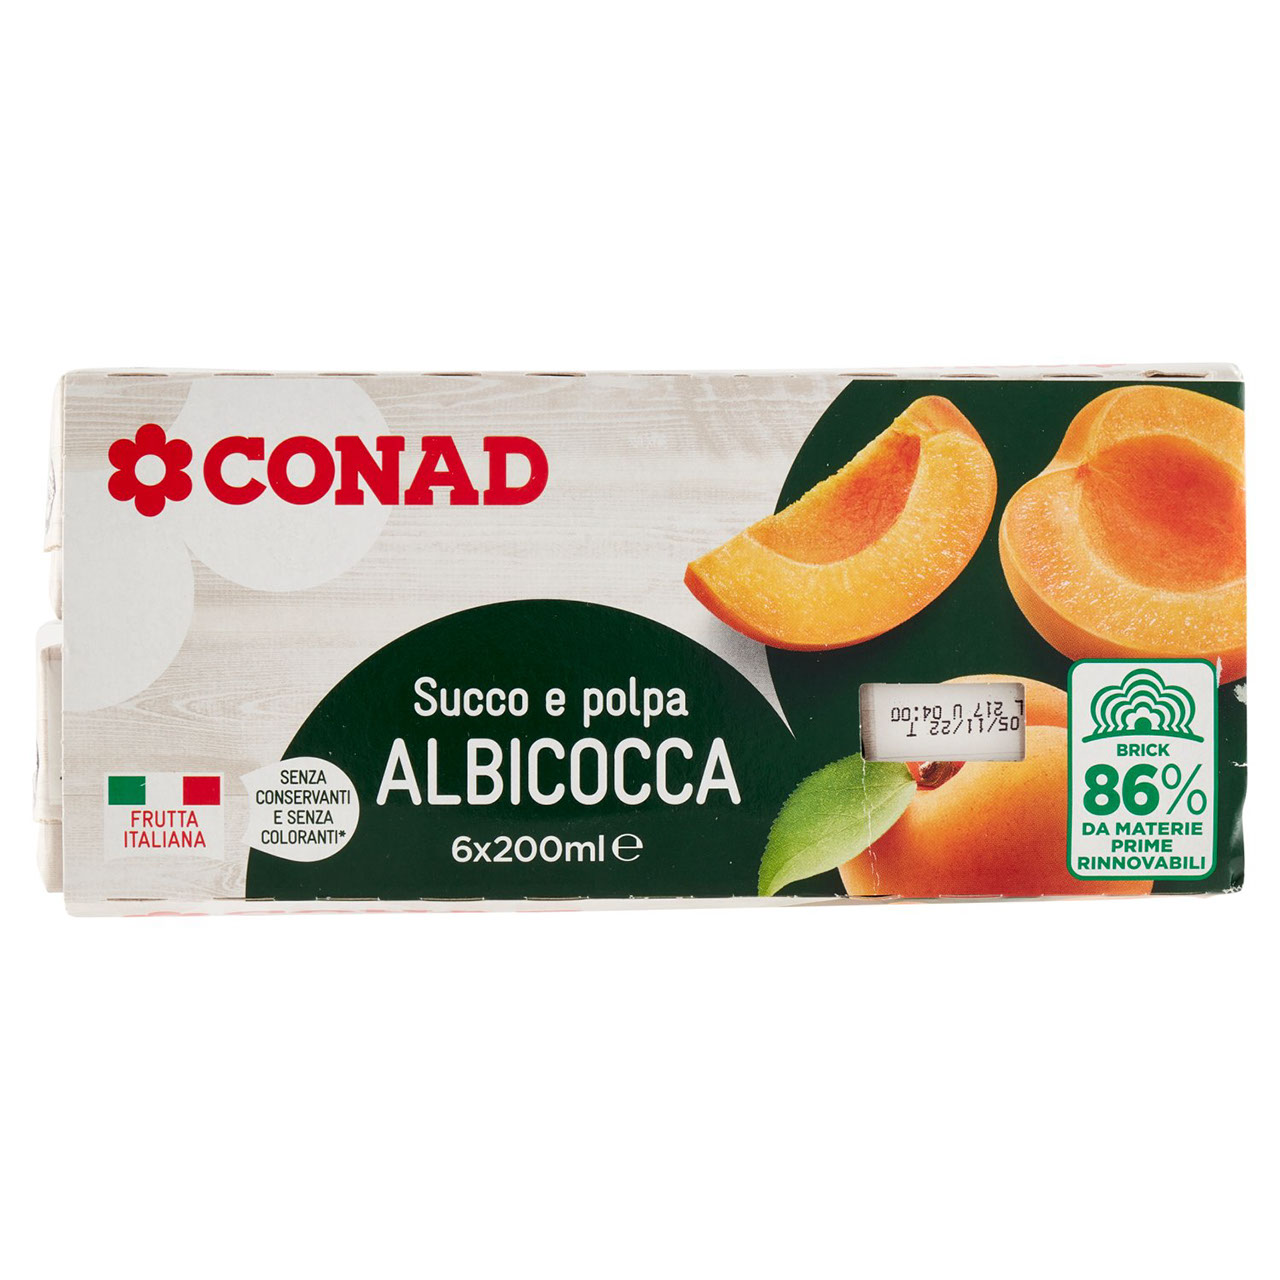 Succo e polpa Albicocca 6x200ml Conad online